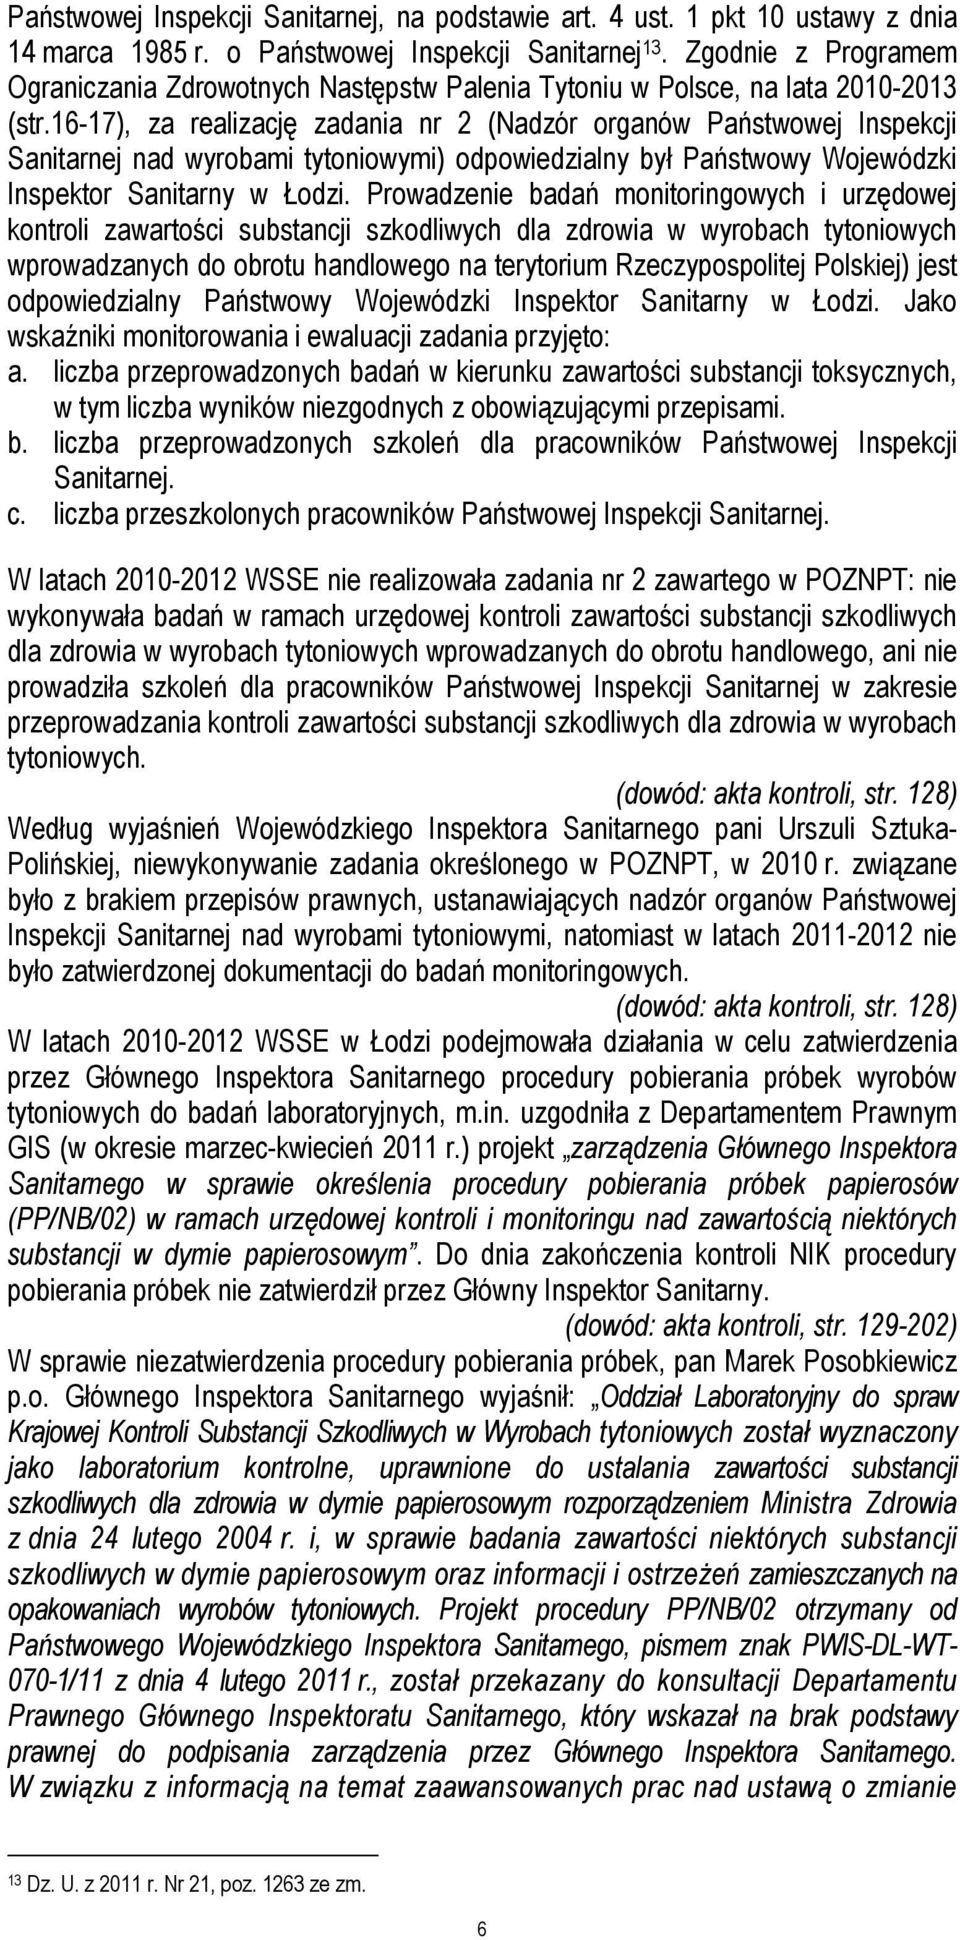 16-17), za realizację zadania nr 2 (Nadzór organów Państwowej Inspekcji Sanitarnej nad wyrobami tytoniowymi) odpowiedzialny był Państwowy Wojewódzki Inspektor Sanitarny w Łodzi.